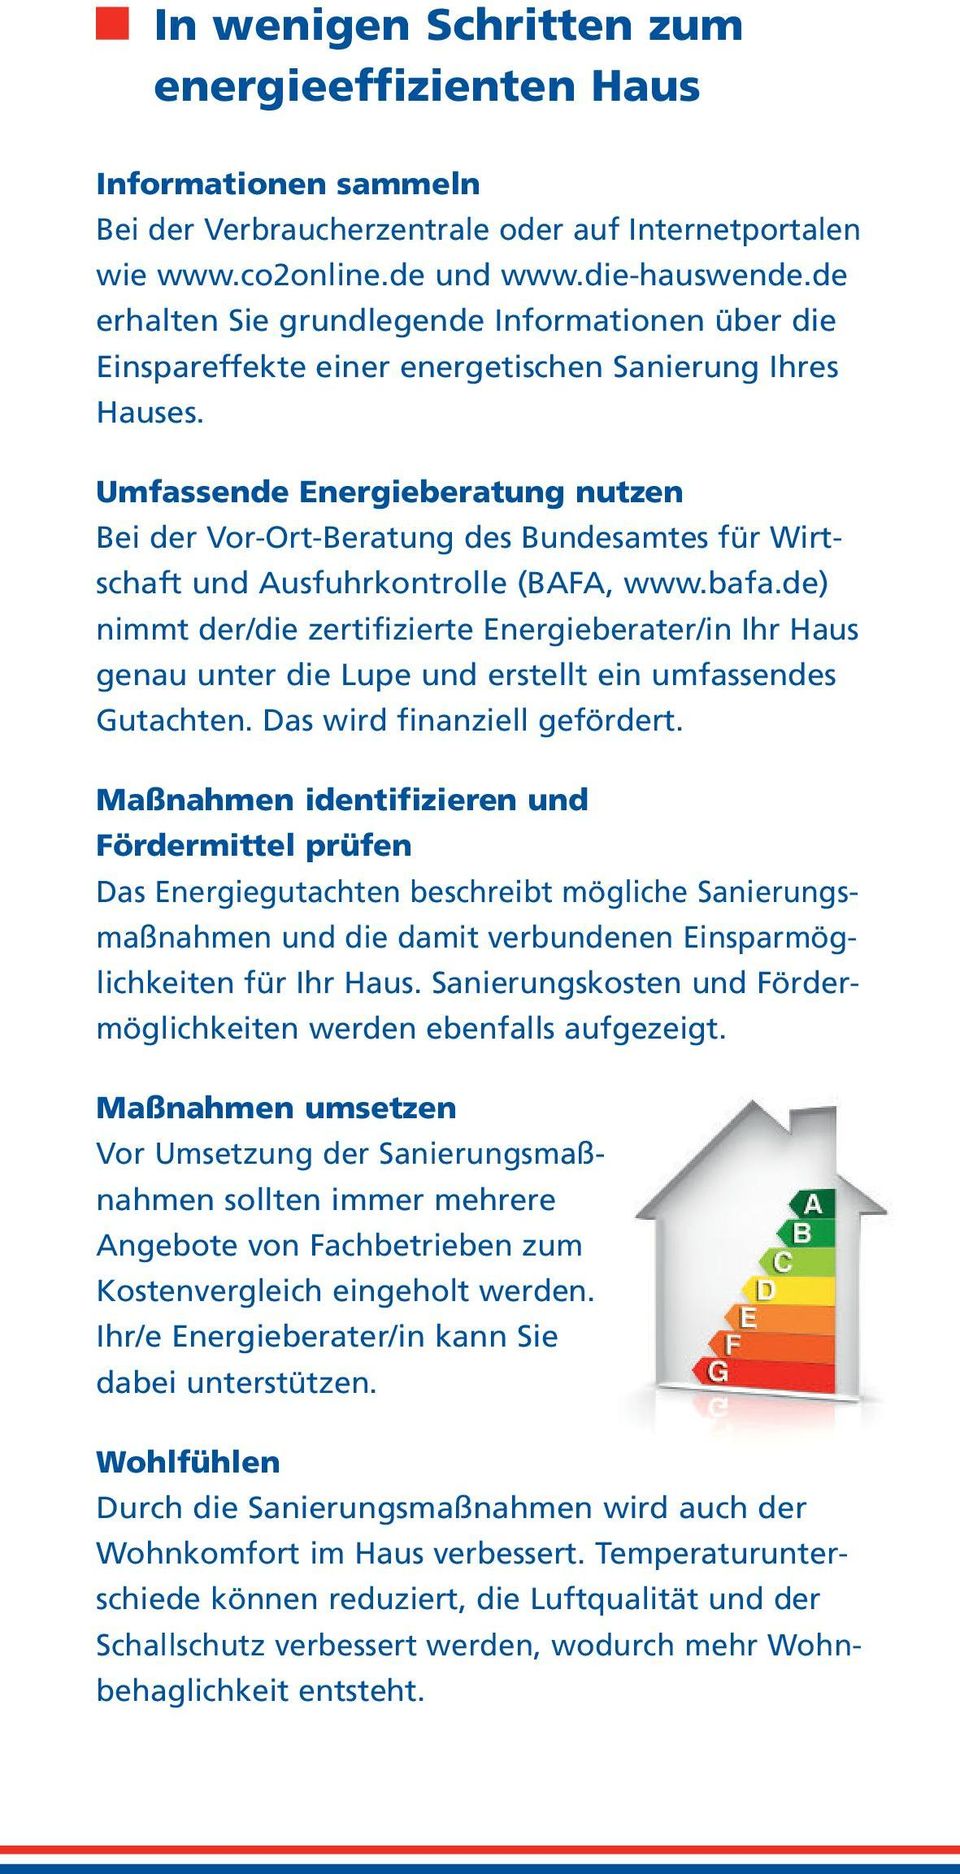 Umfassende Energieberatung nutzen Bei der Vor-Ort-Beratung des Bundesamtes für Wirtschaft und Ausfuhrkontrolle (BAFA, www.bafa.